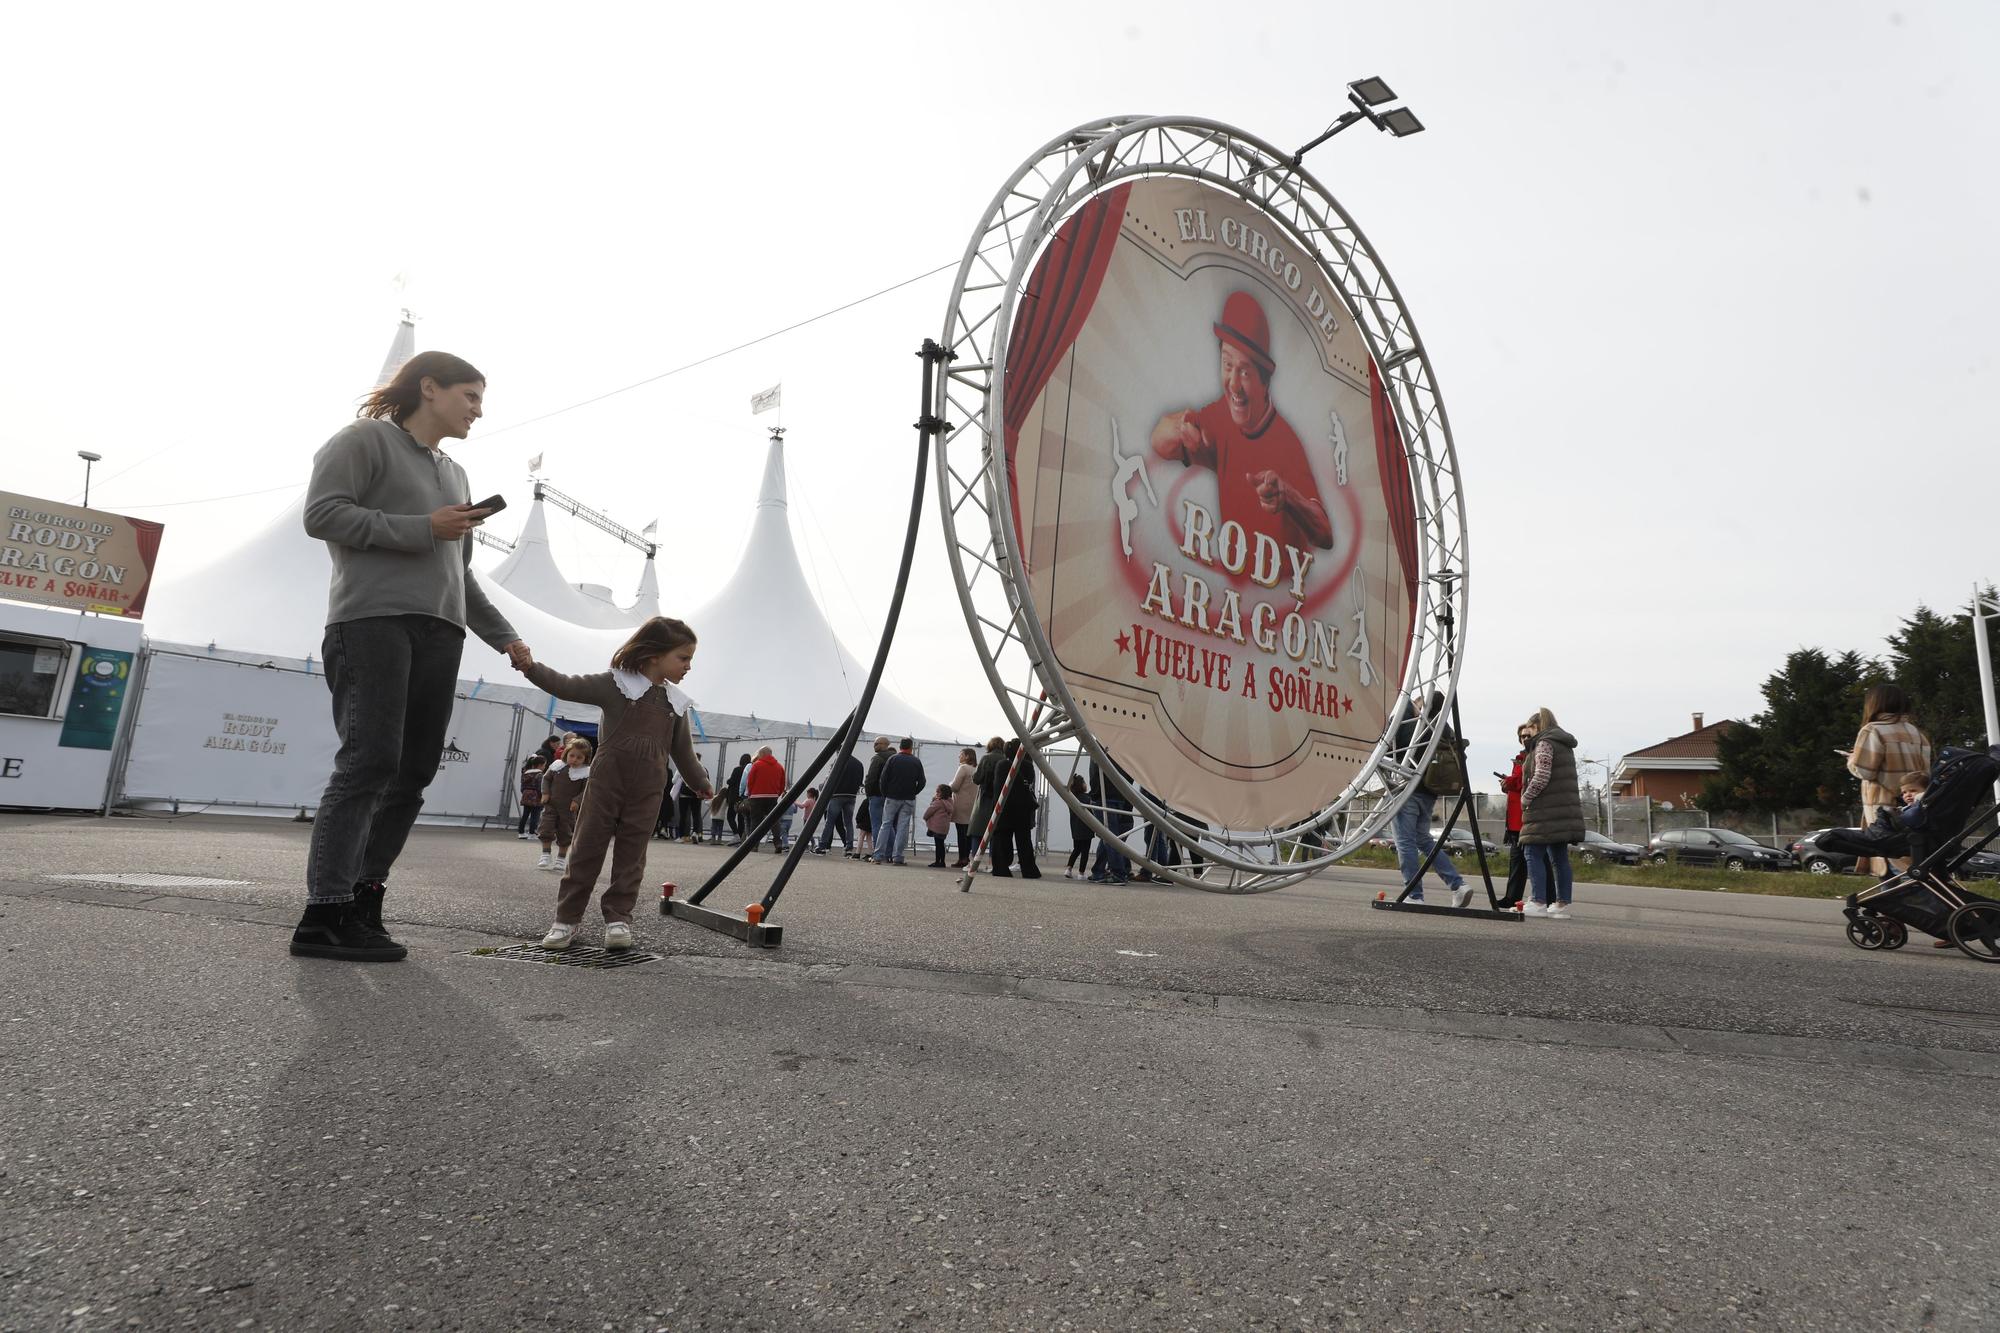 En imágenes: Así es el circo de Rody Aragón que acaba de estrenar en Gijón